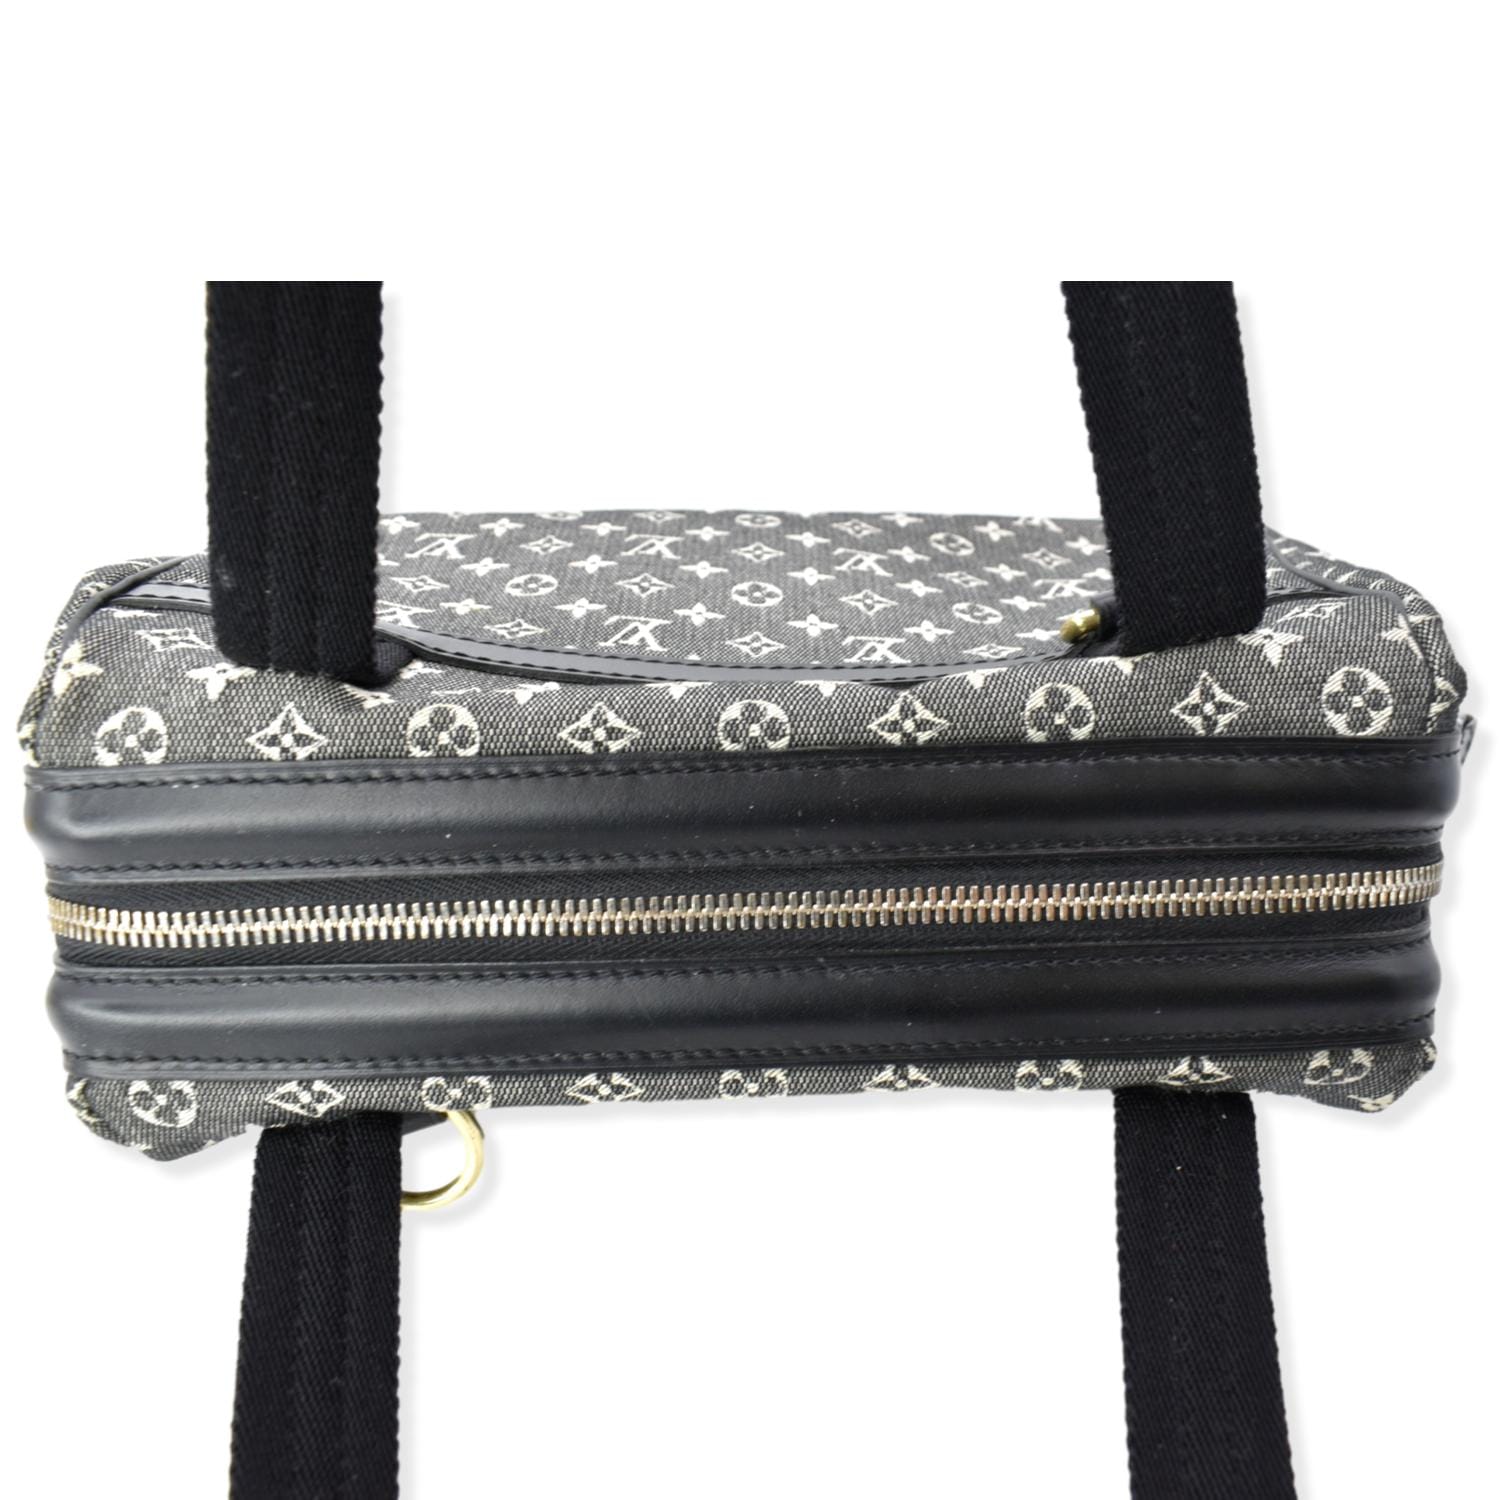 Louis Vuitton Josephine PM Bag Review 